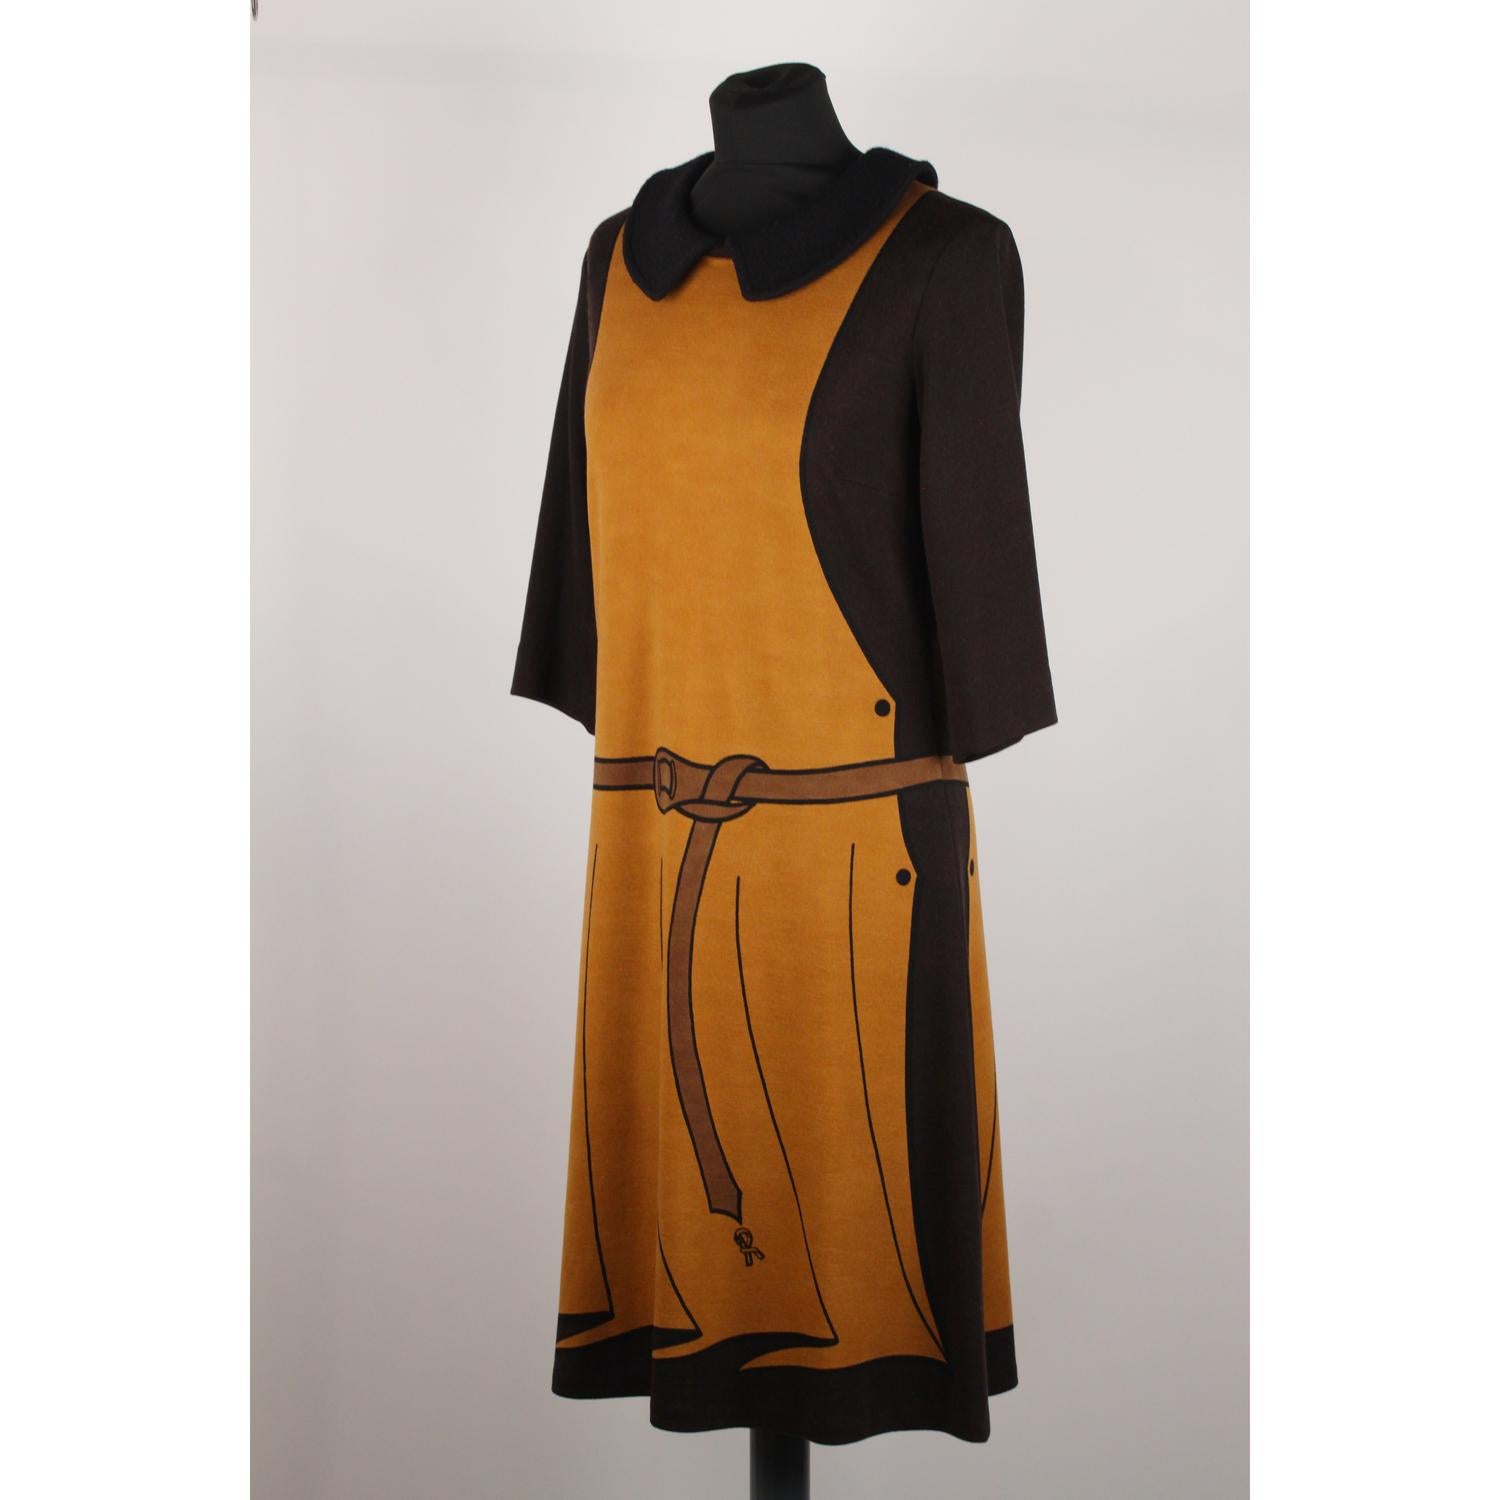 Roberta Di Camerino Vintage Trompe l'Oeil 3/4 Sleeve Dress Size 48 2